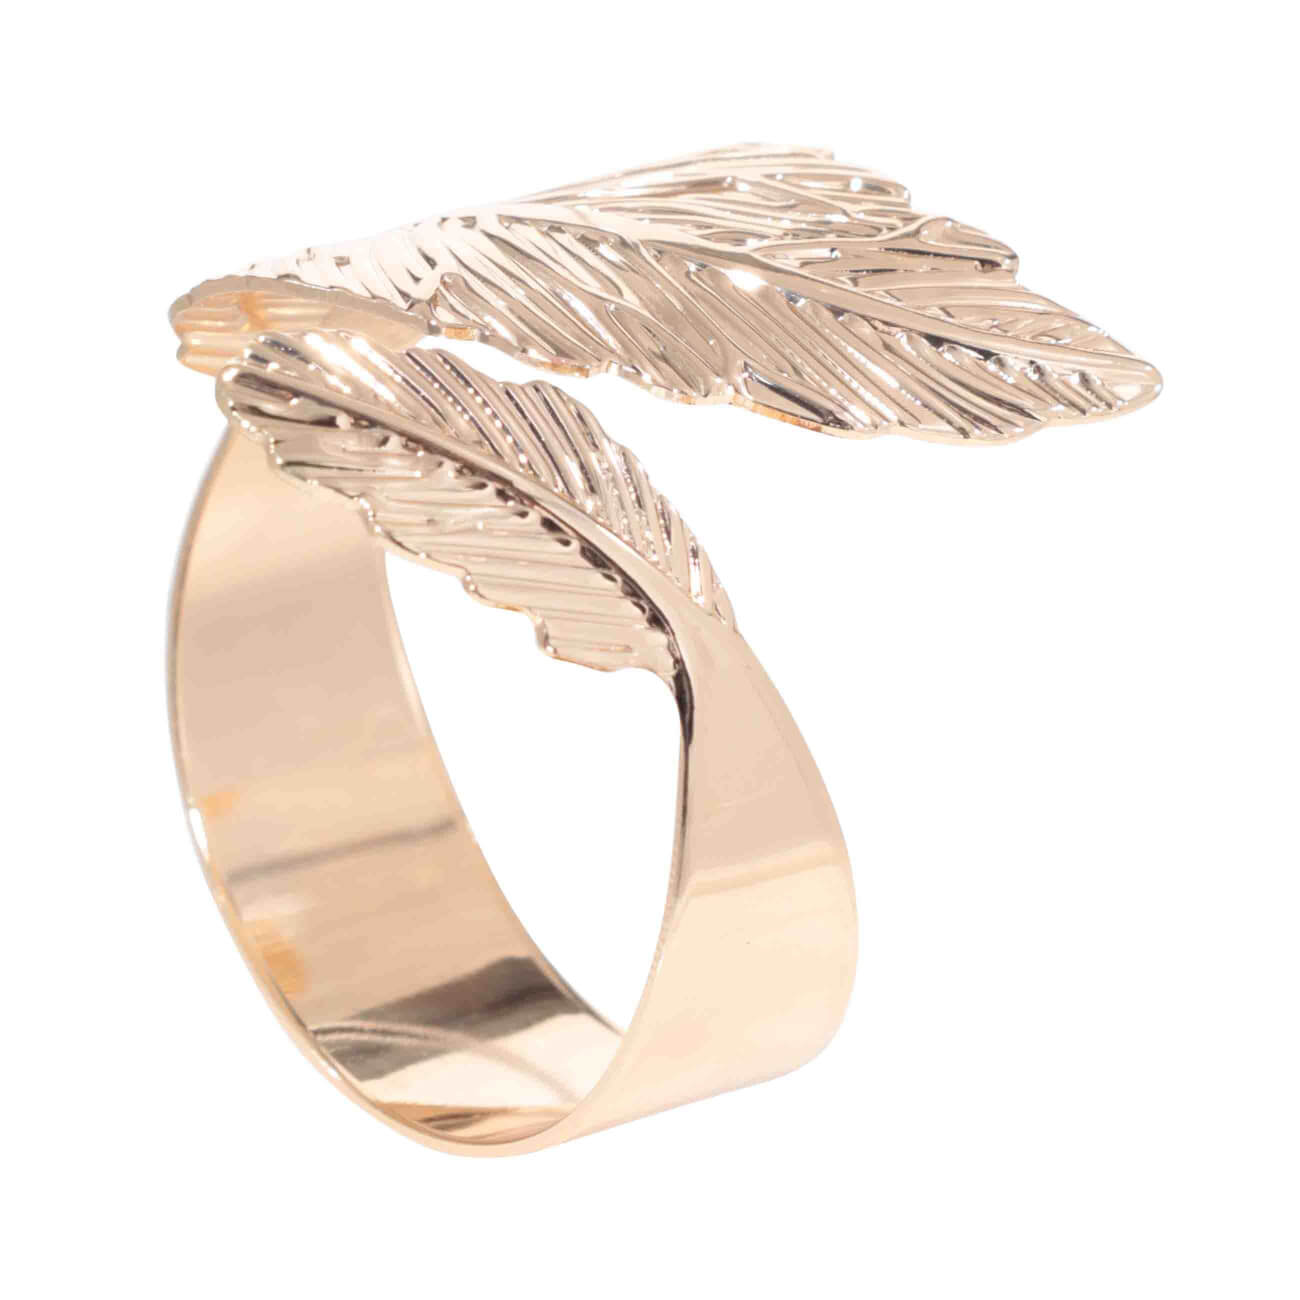 кольцо для салфеток 5 см металл золотистое листья print Кольцо для салфеток, 5 см, металл, золотистое, Листья, Print